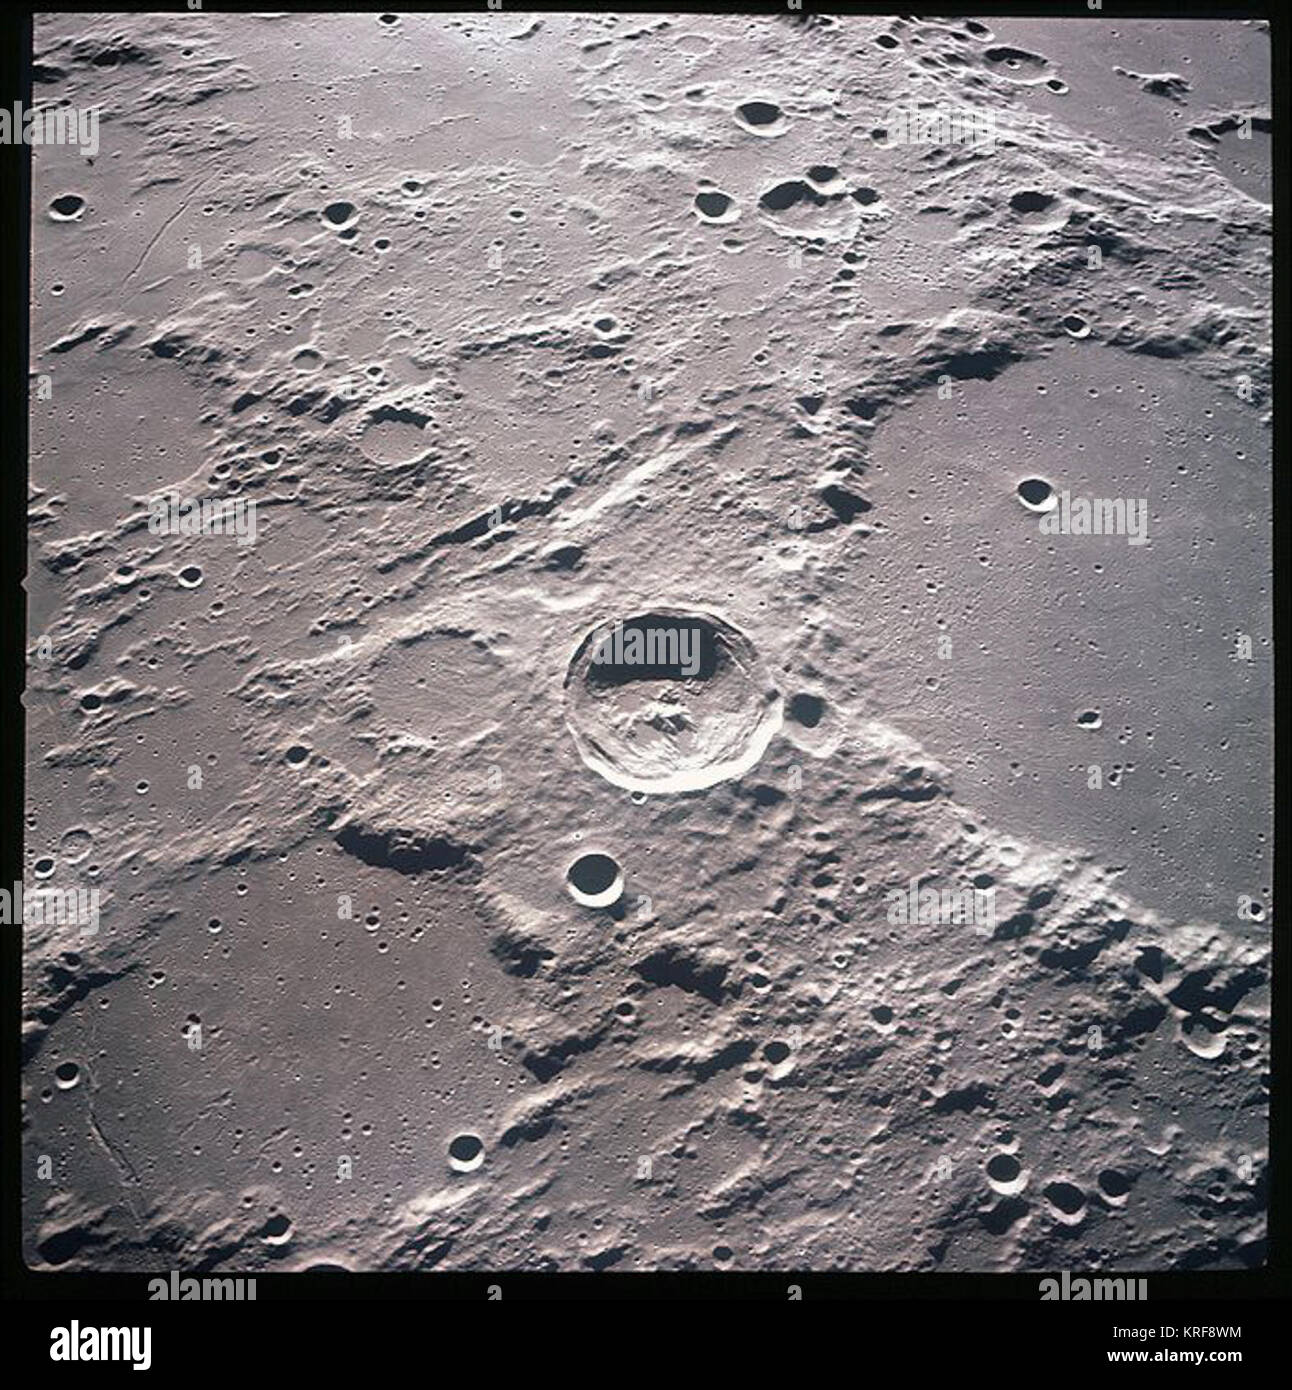 Herschel crater, Moon Stock Photo - Alamy